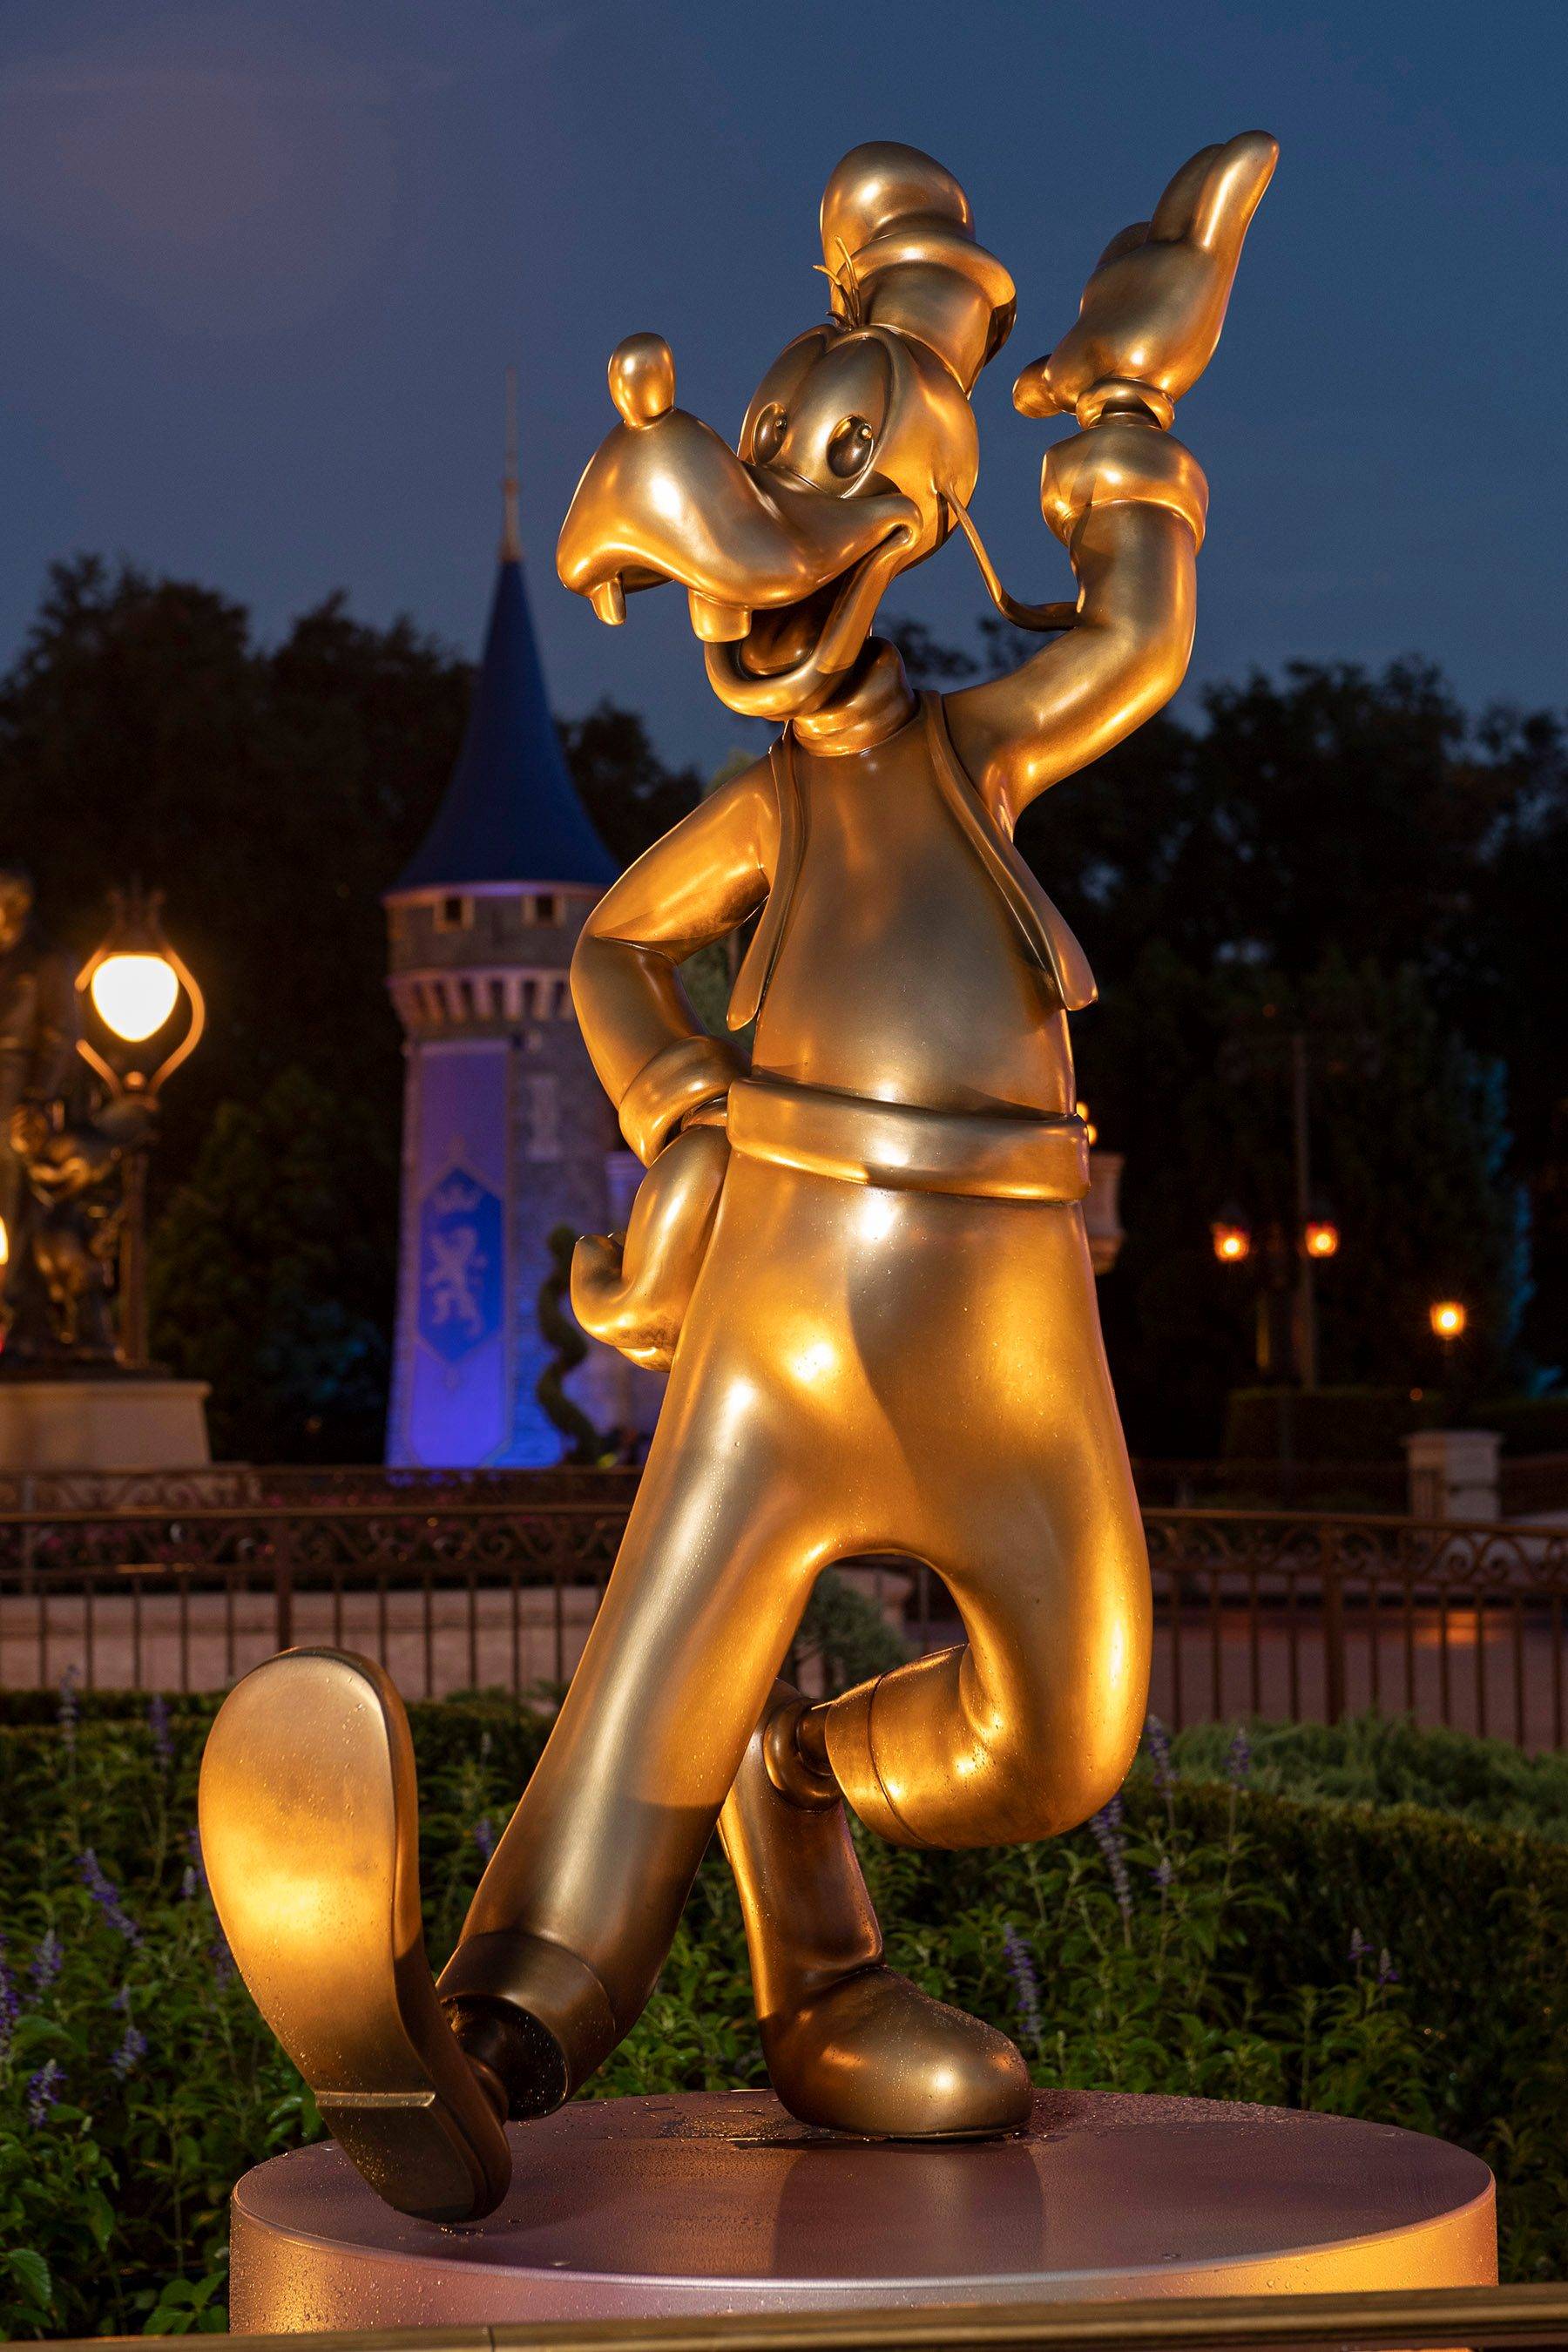 First Disney Fab 50 statues at Magic Kingdom